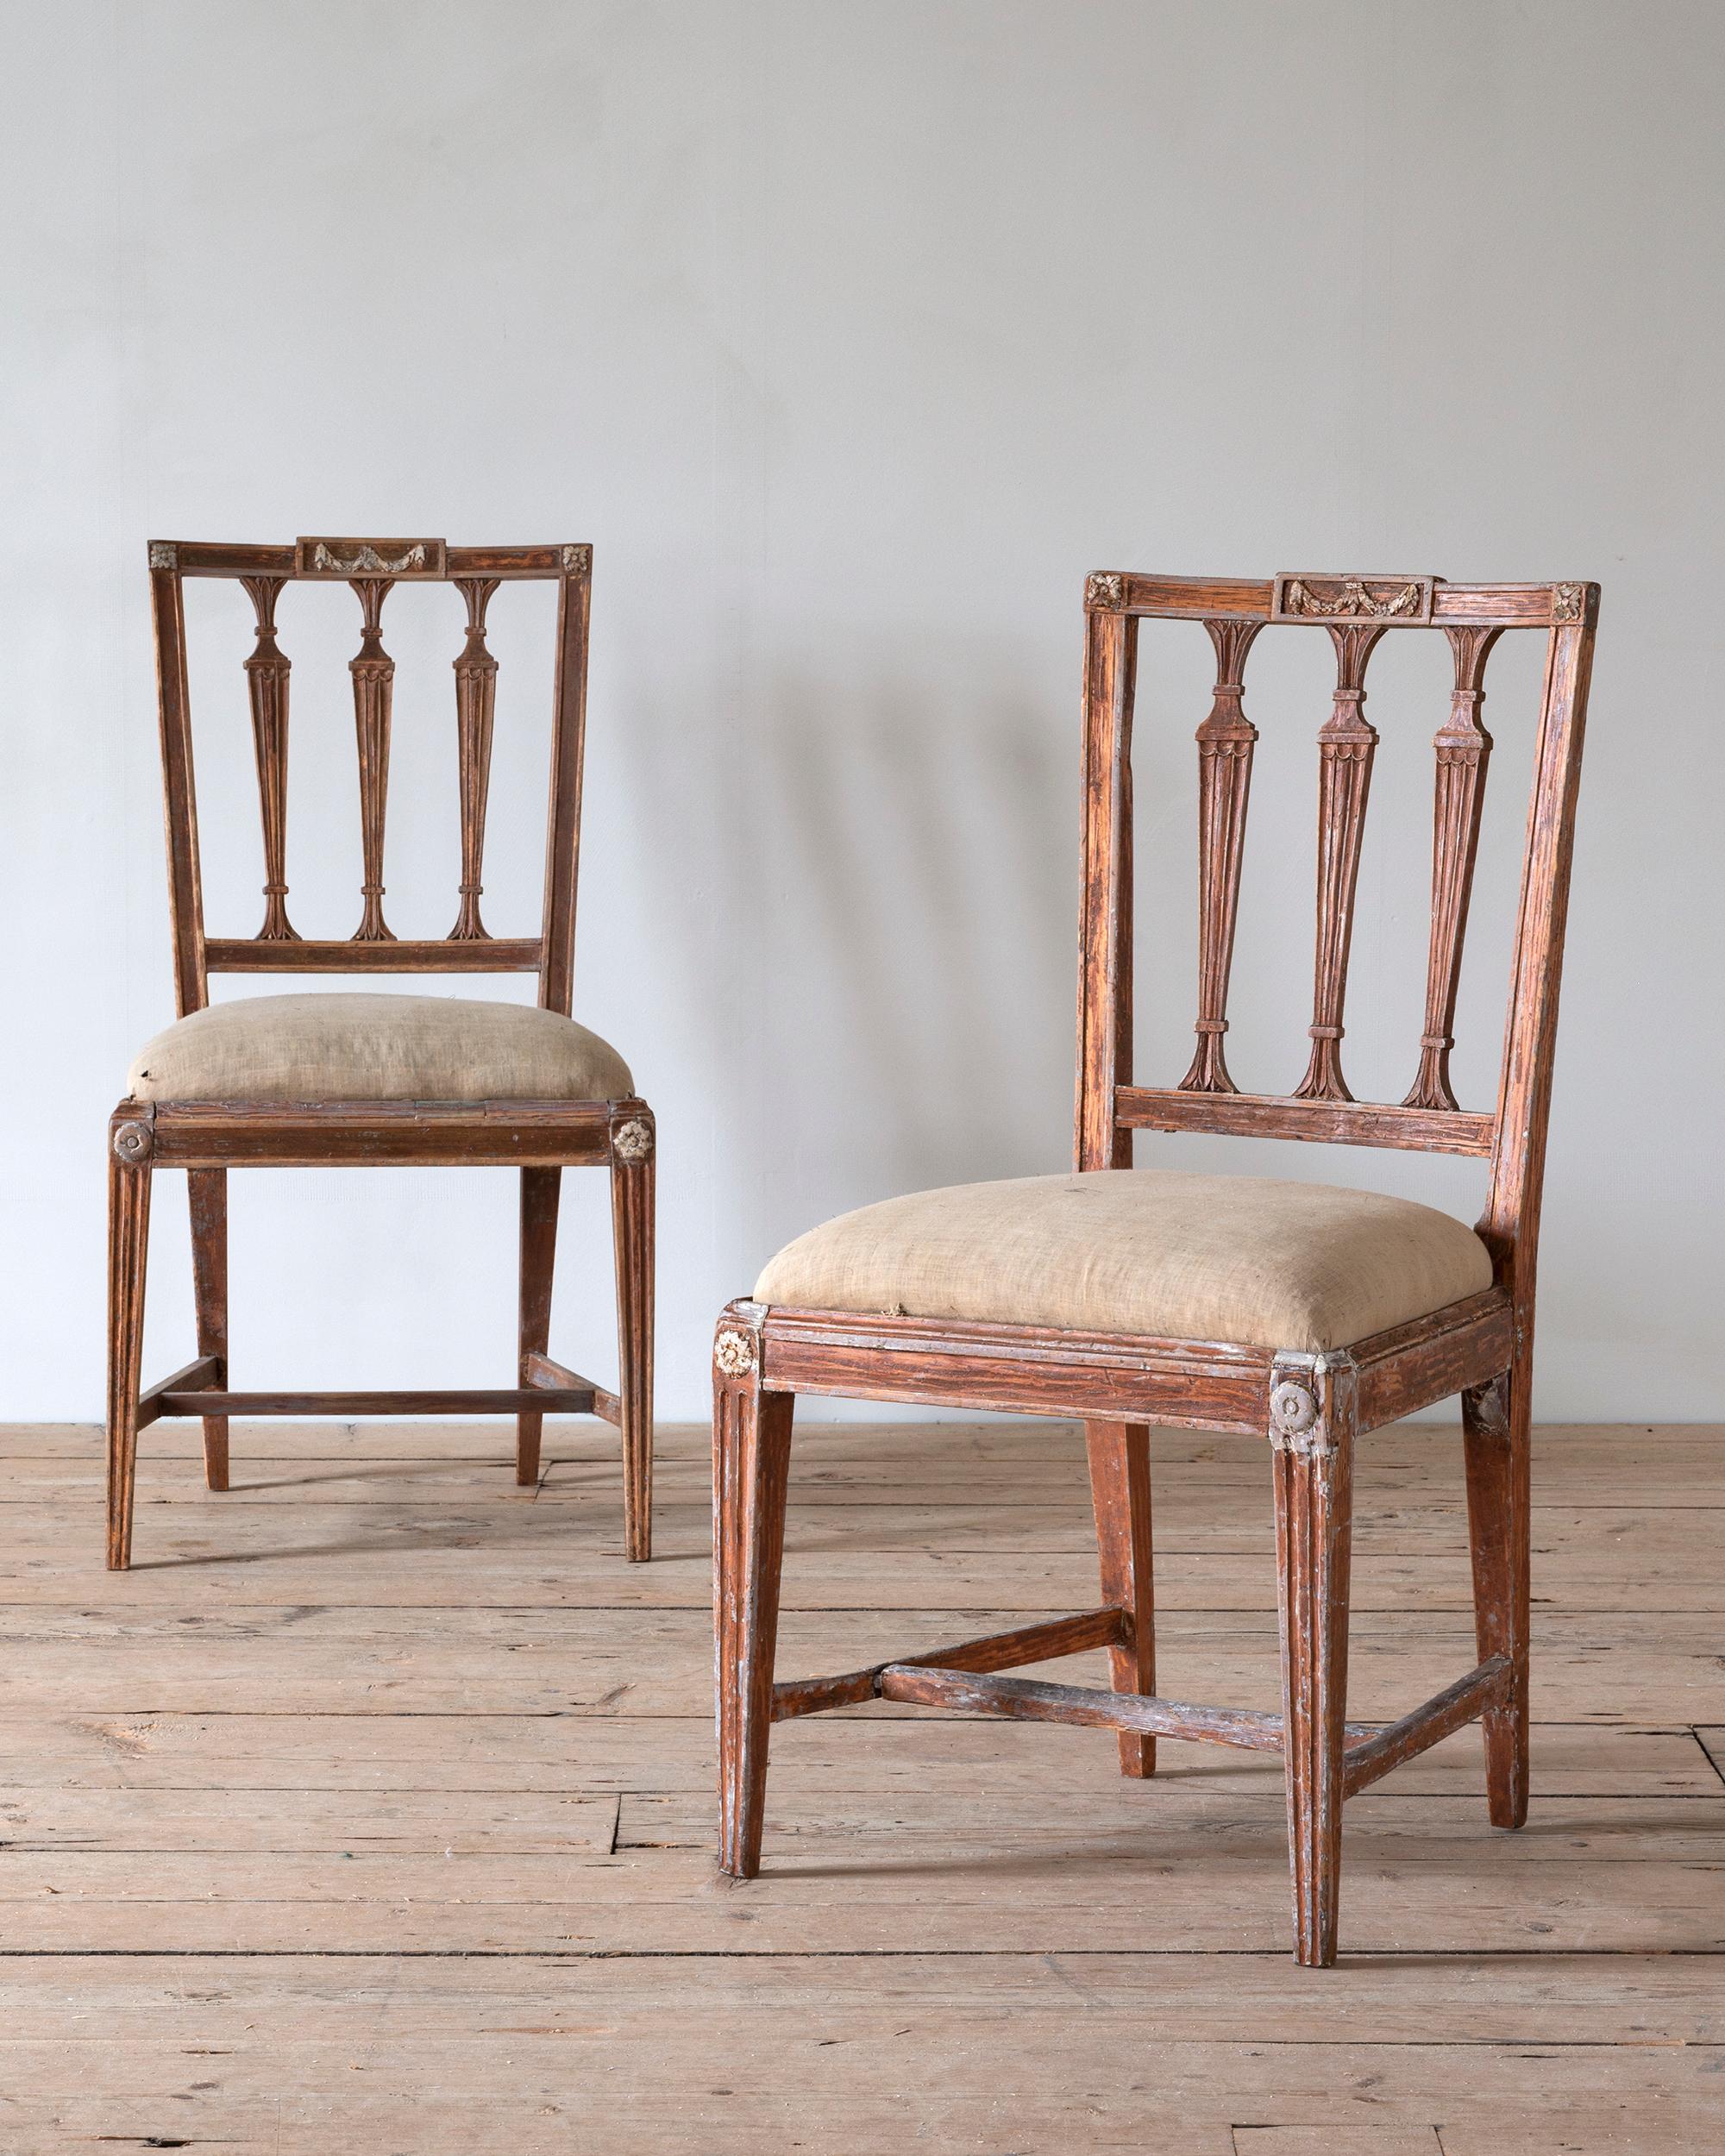 Feines Paar schwedischer Stühle aus dem frühen 19. Jahrhundert von Meister Melchior Lundberg (tätig in Stockholm 1795-1834) in ihrer ursprünglichen Ausführung. Um 1810 Stockholm, Schweden. 

